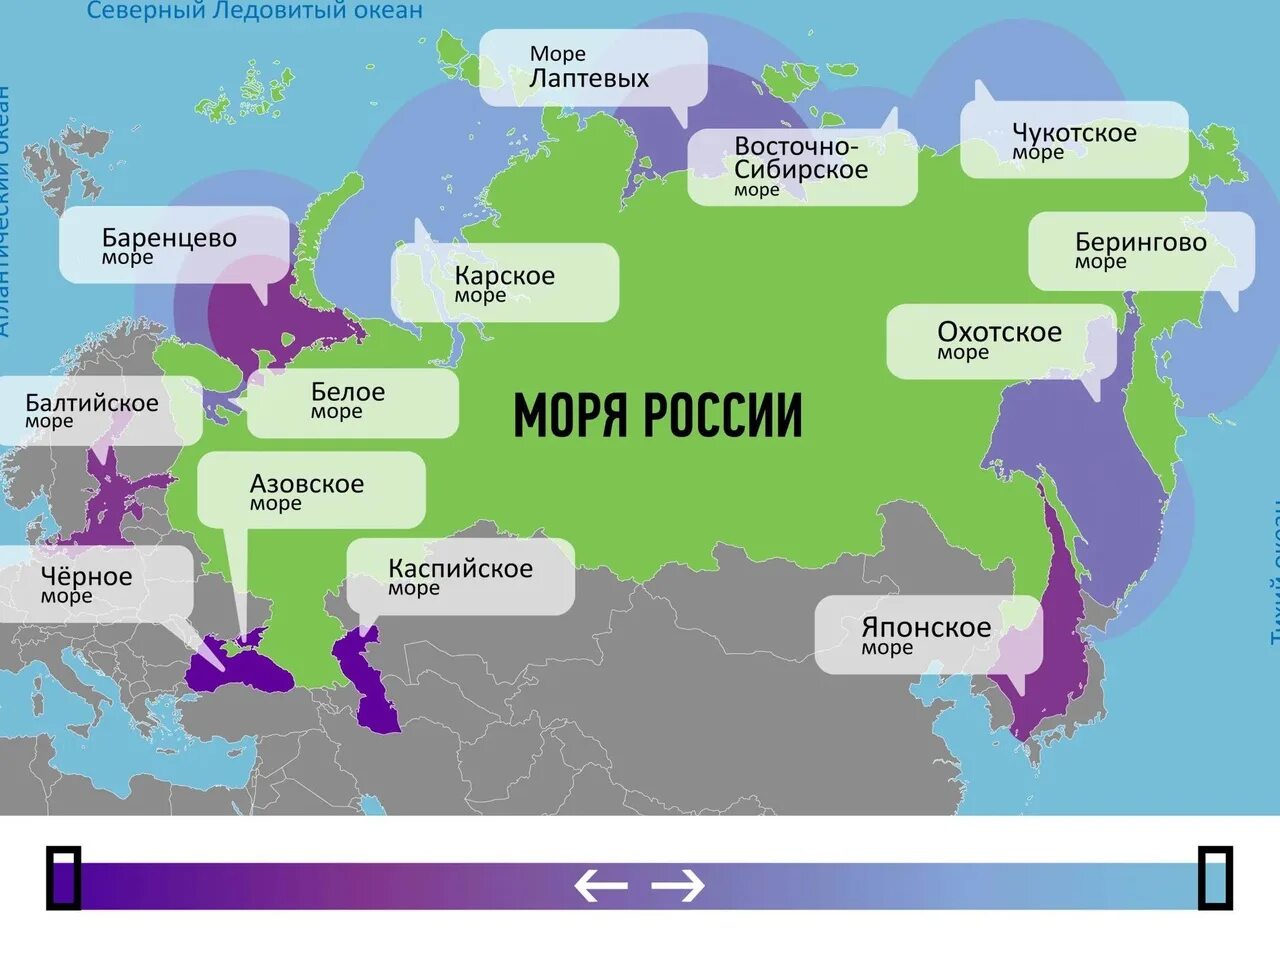 Моря омывающие Россию на карте. Моря омывающие Россию. Моря России на карте. Моря и океаны омывающие Россию на карте.